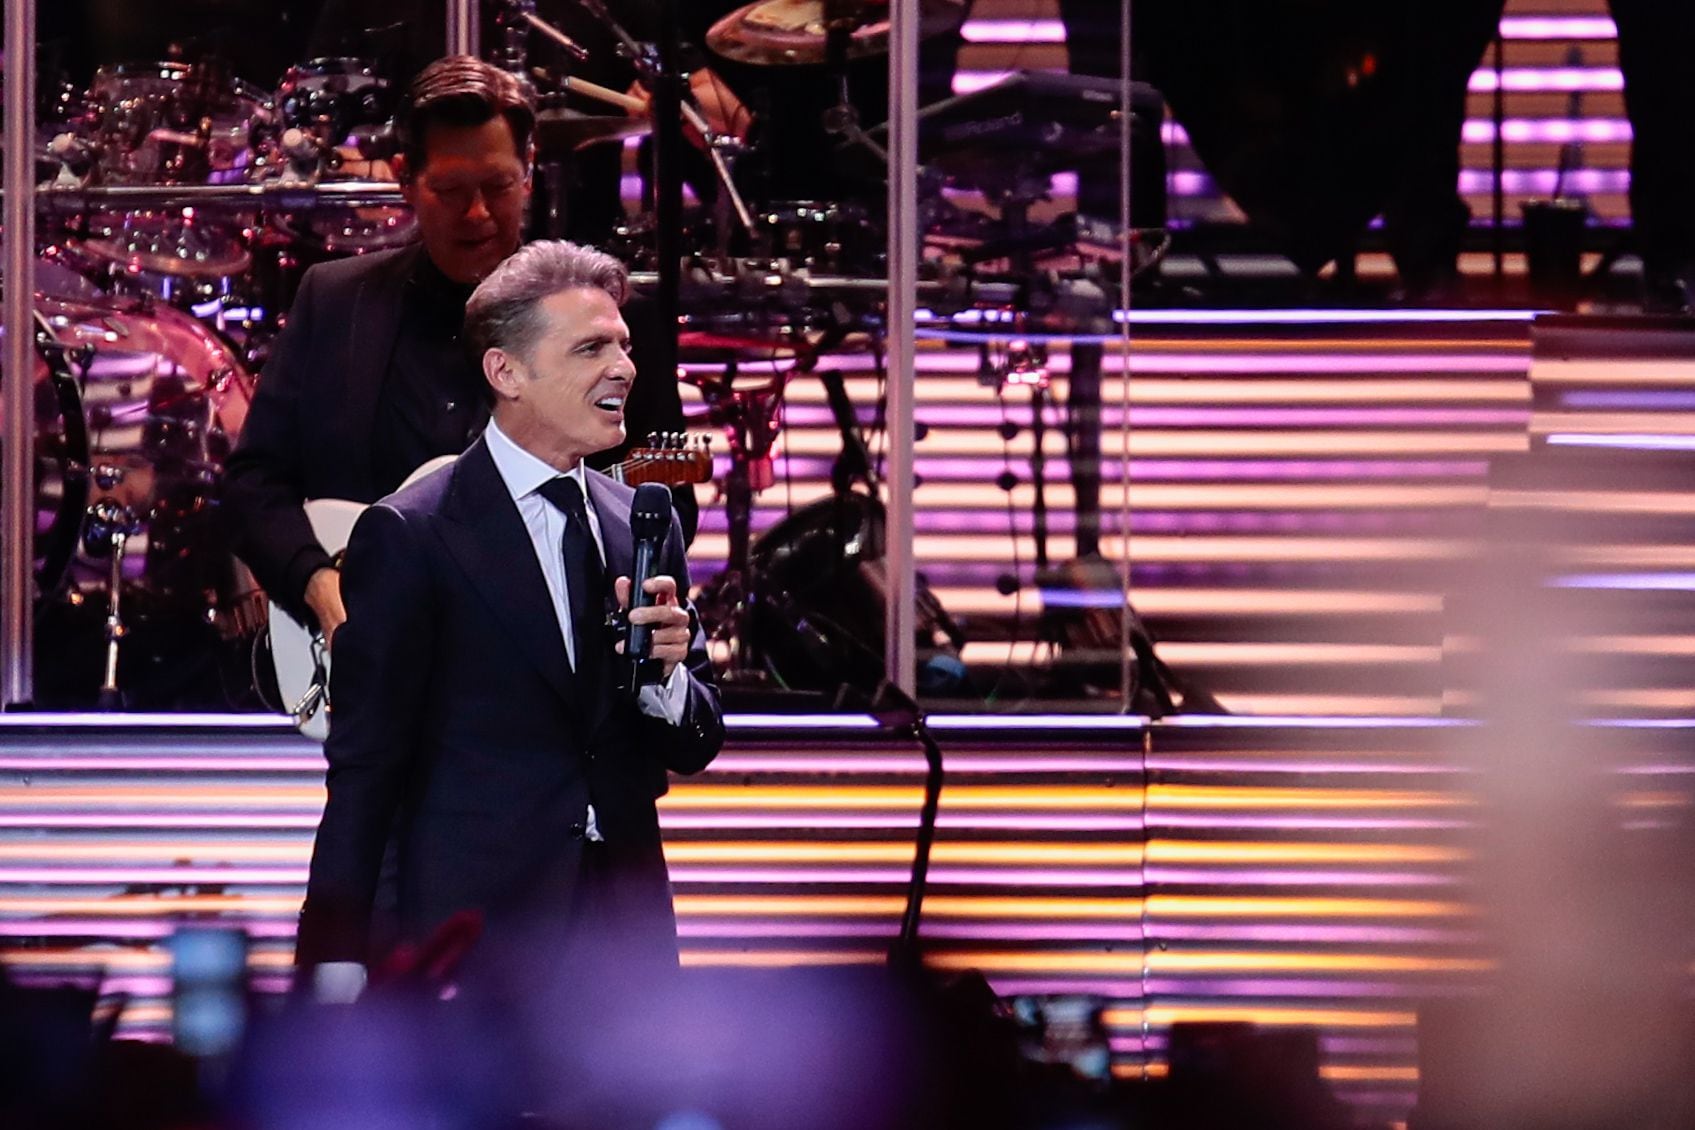 Ya en el escenario del Movistar Arena, Luis Miguel entonó su segunda canción "Amor amor amor" y luego "Suave" que hicieron bailar al público (RS Fotos) 